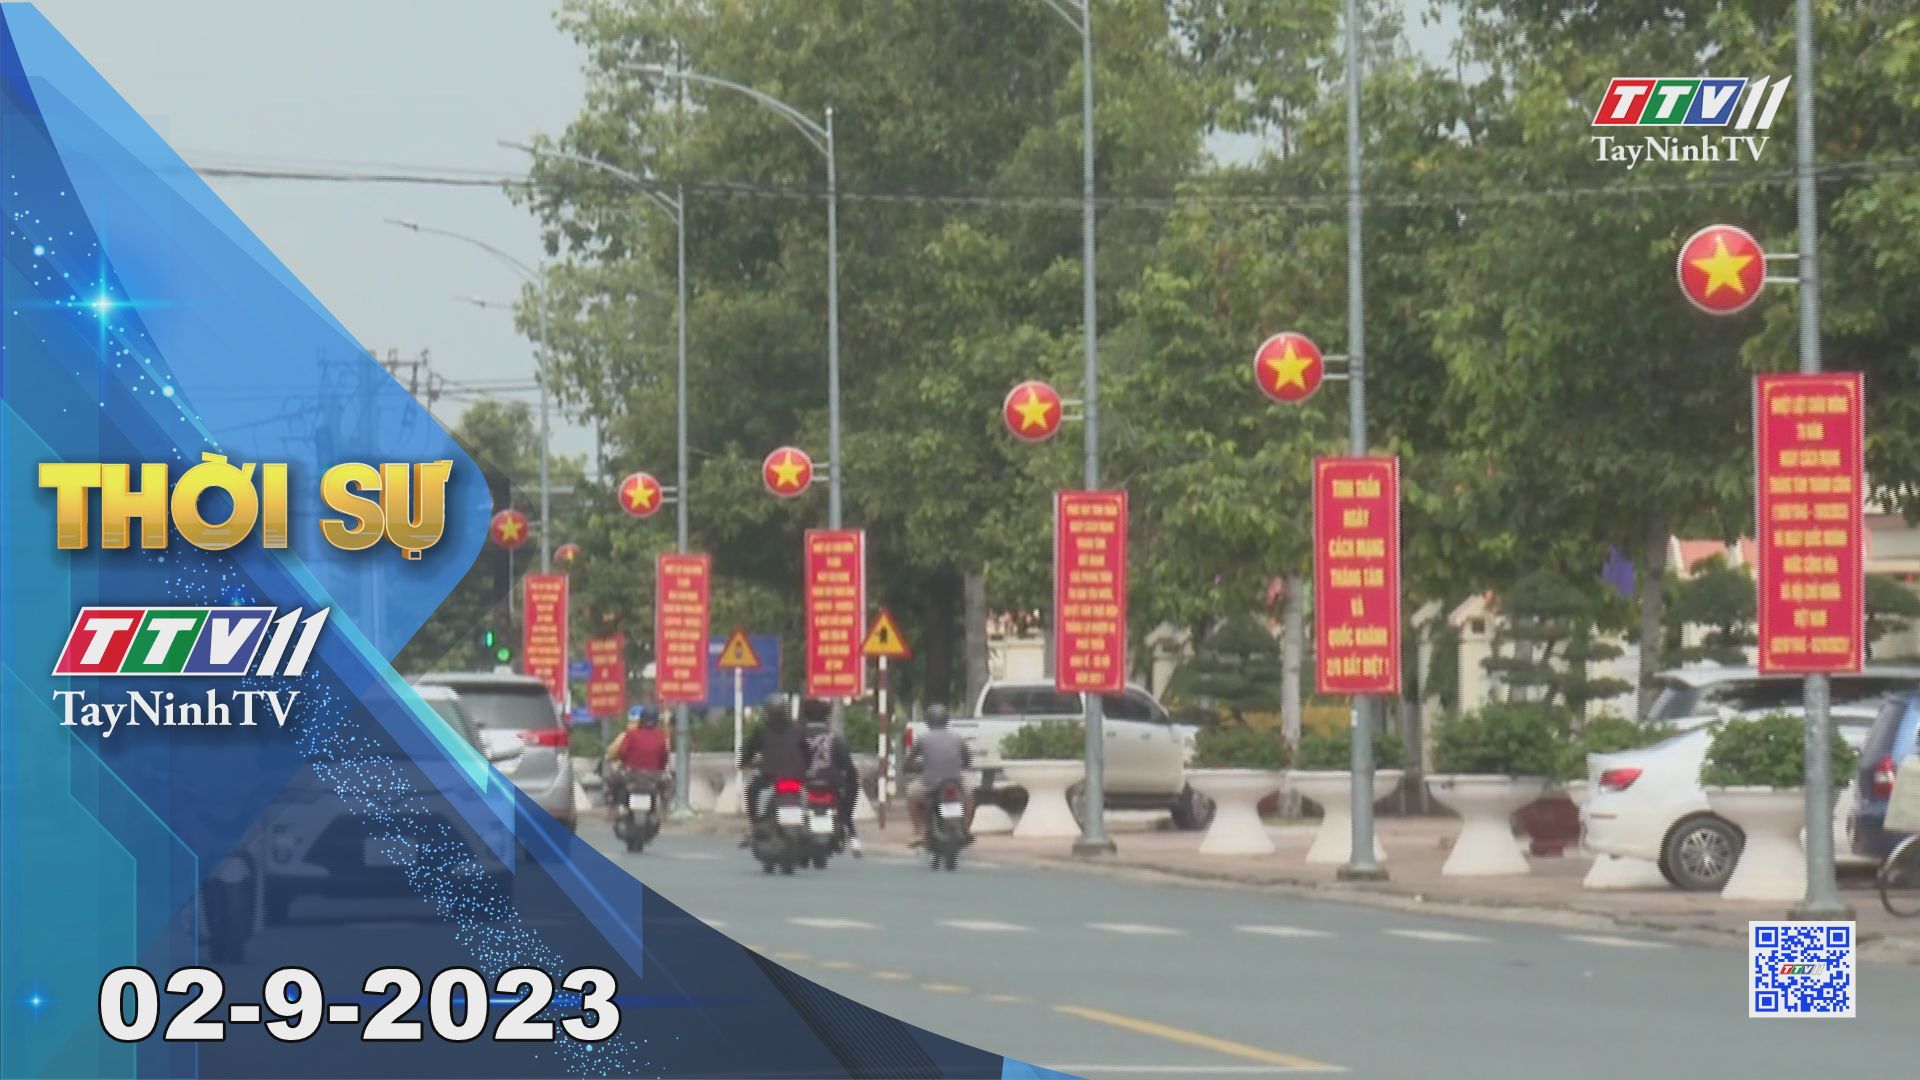 Thời sự Tây Ninh 02-9-2023 | Tin tức hôm nay | TayNinhTV